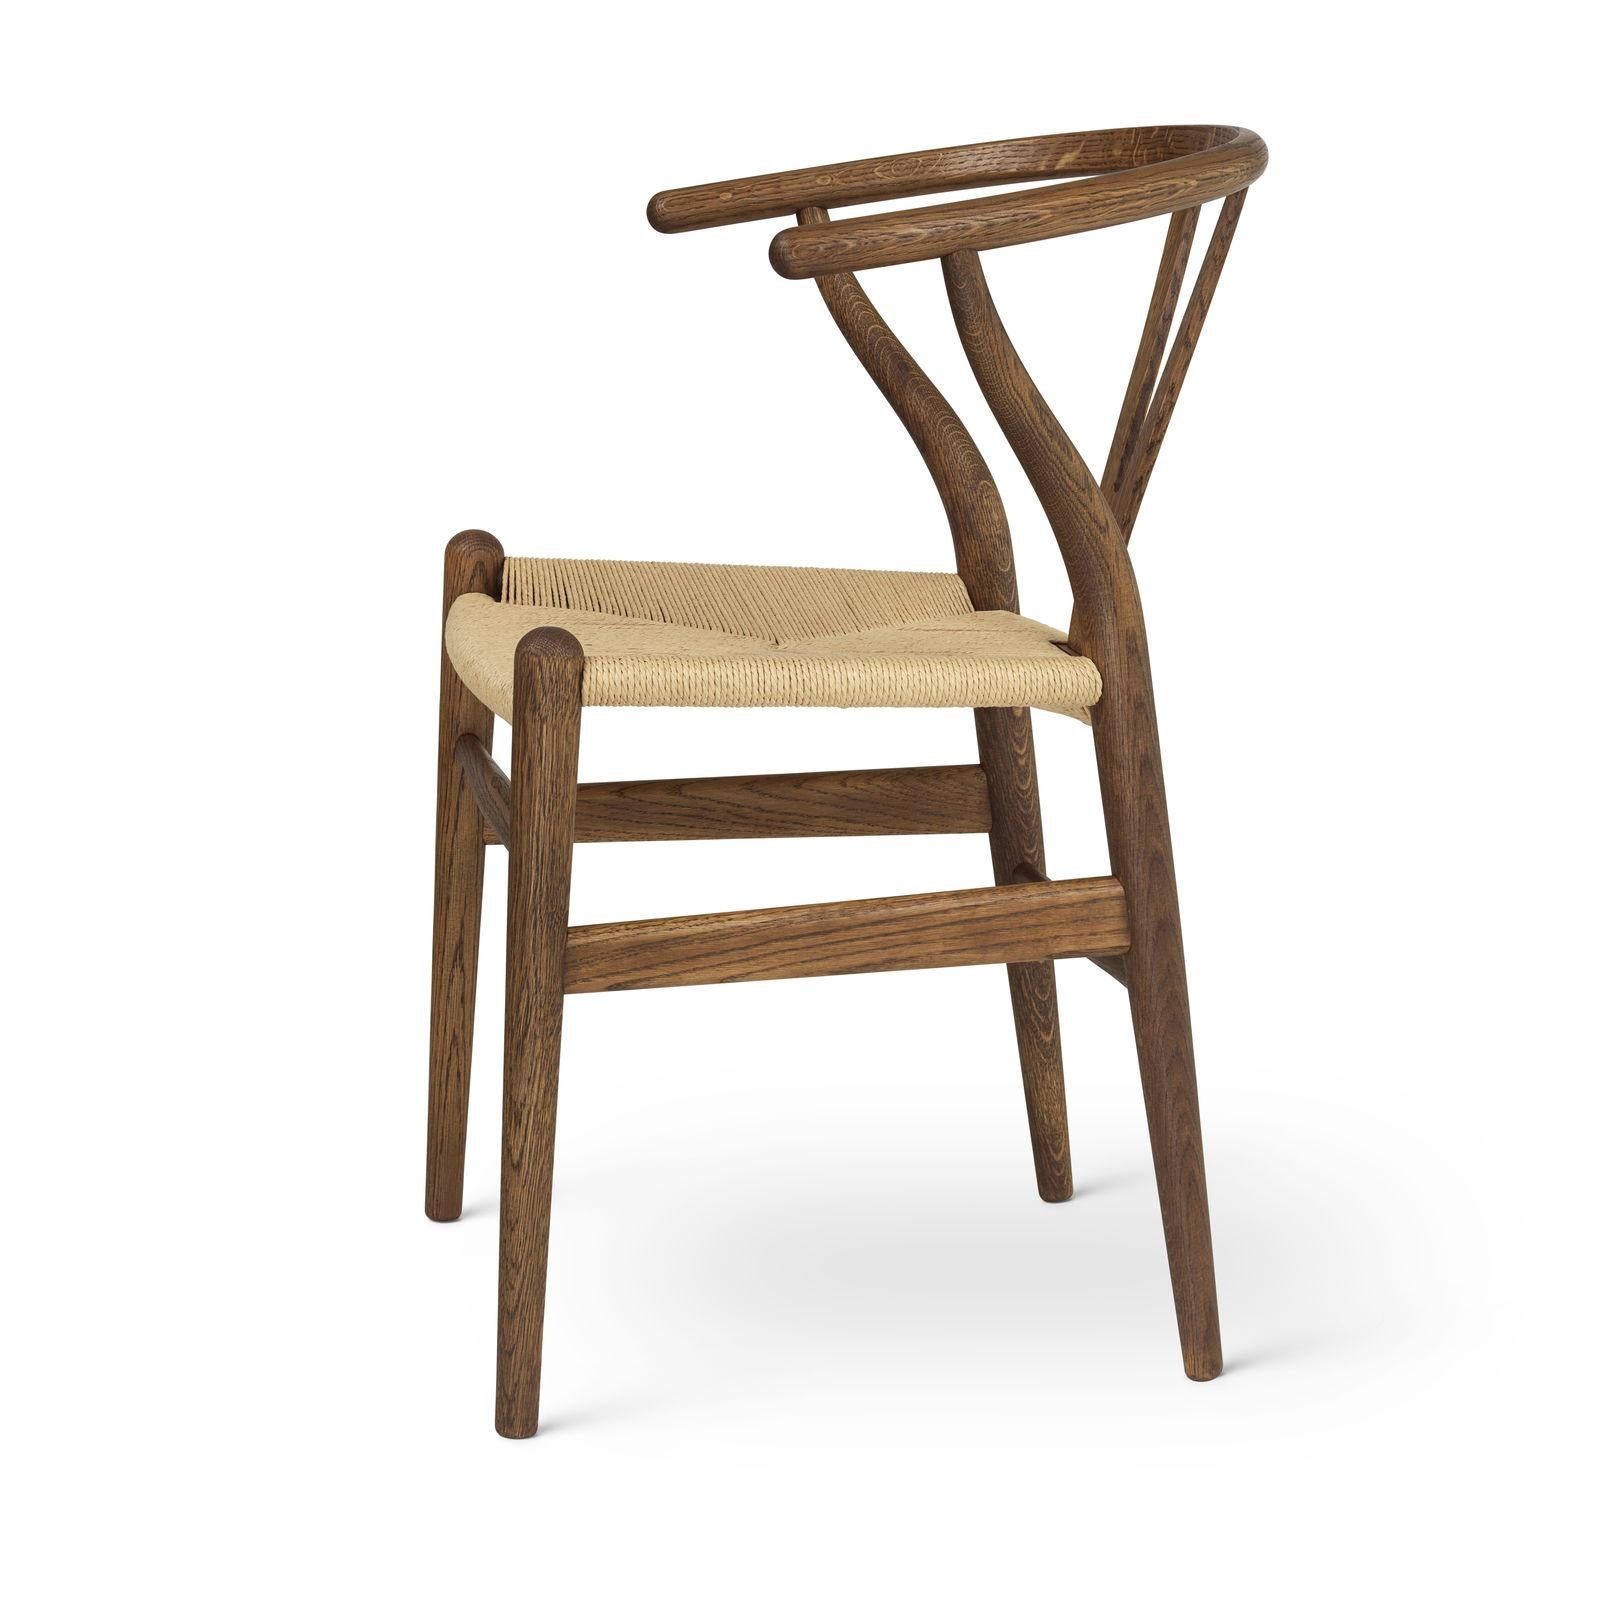 Das allererste Modell, das Hans J. Wegner 1949 exklusiv für Carl Hansen & Søn entwarf, der CH24 oder Wishbone Chair, wird seit seiner Einführung im Jahr 1950 kontinuierlich produziert.